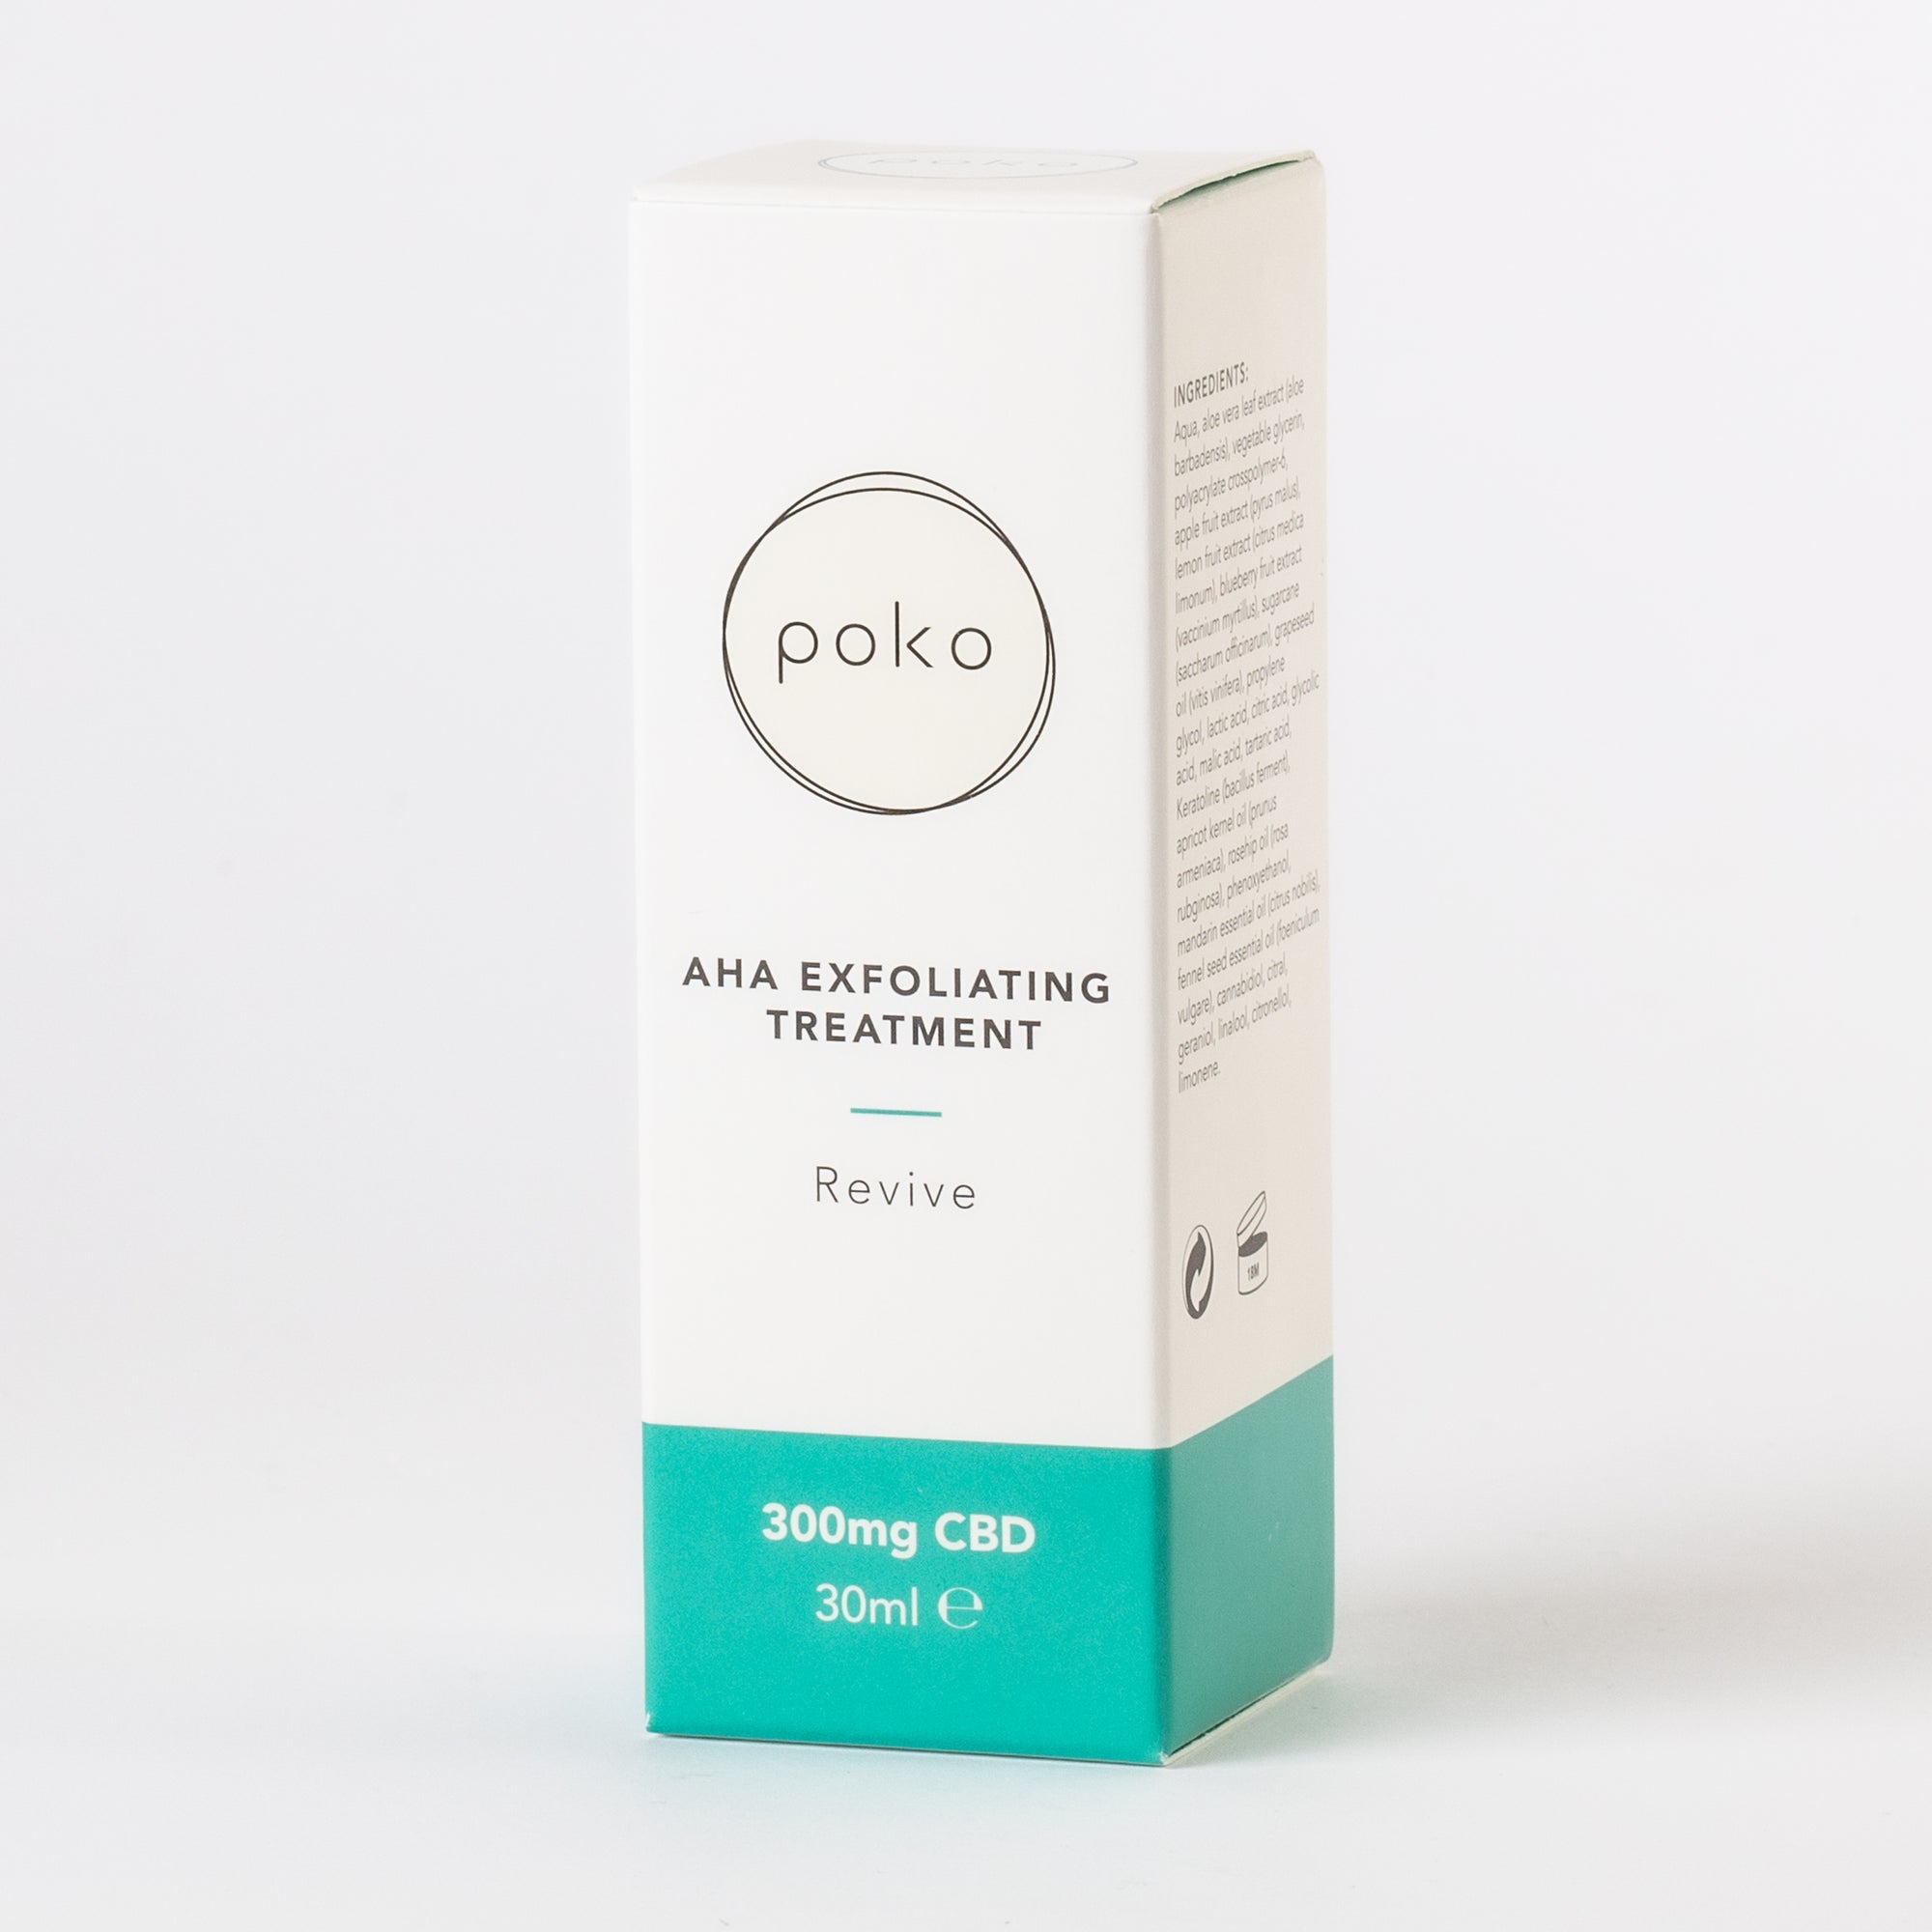 POKO AHA Exfoliating Treatment 30ml For uneven skin tone, dullness & breakouts